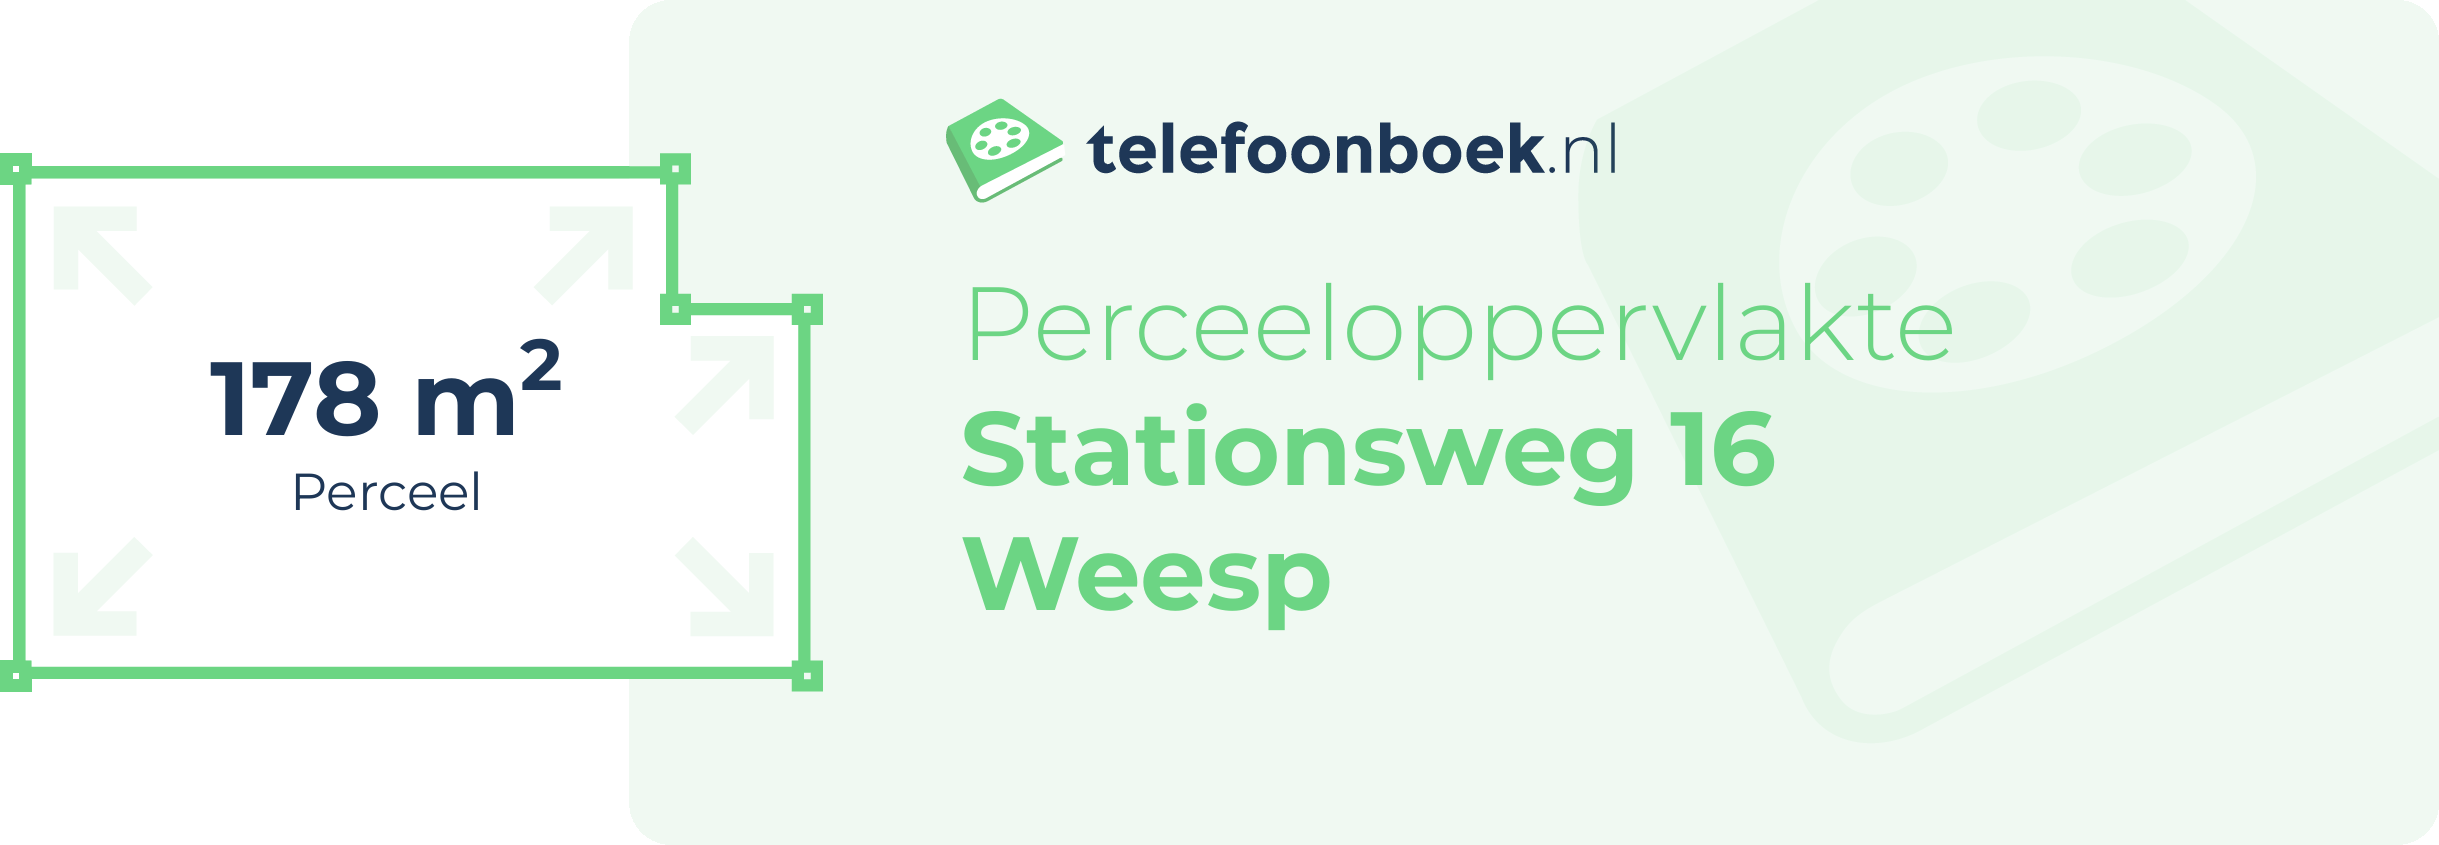 Perceeloppervlakte Stationsweg 16 Weesp